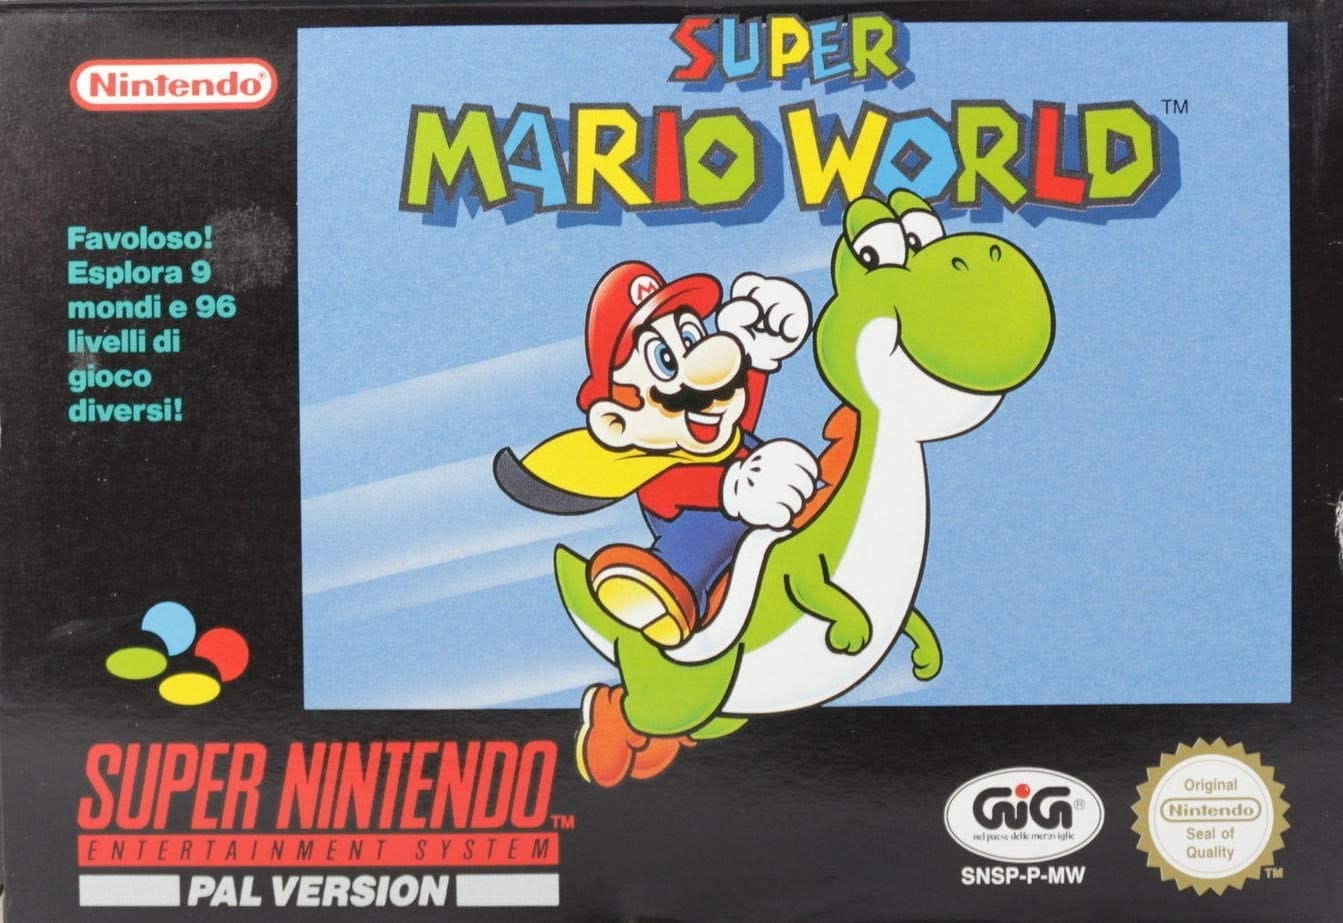 Apontamentos sobre a narratividade e a aspectualização do ato de jogar no jogo  Super Mario World